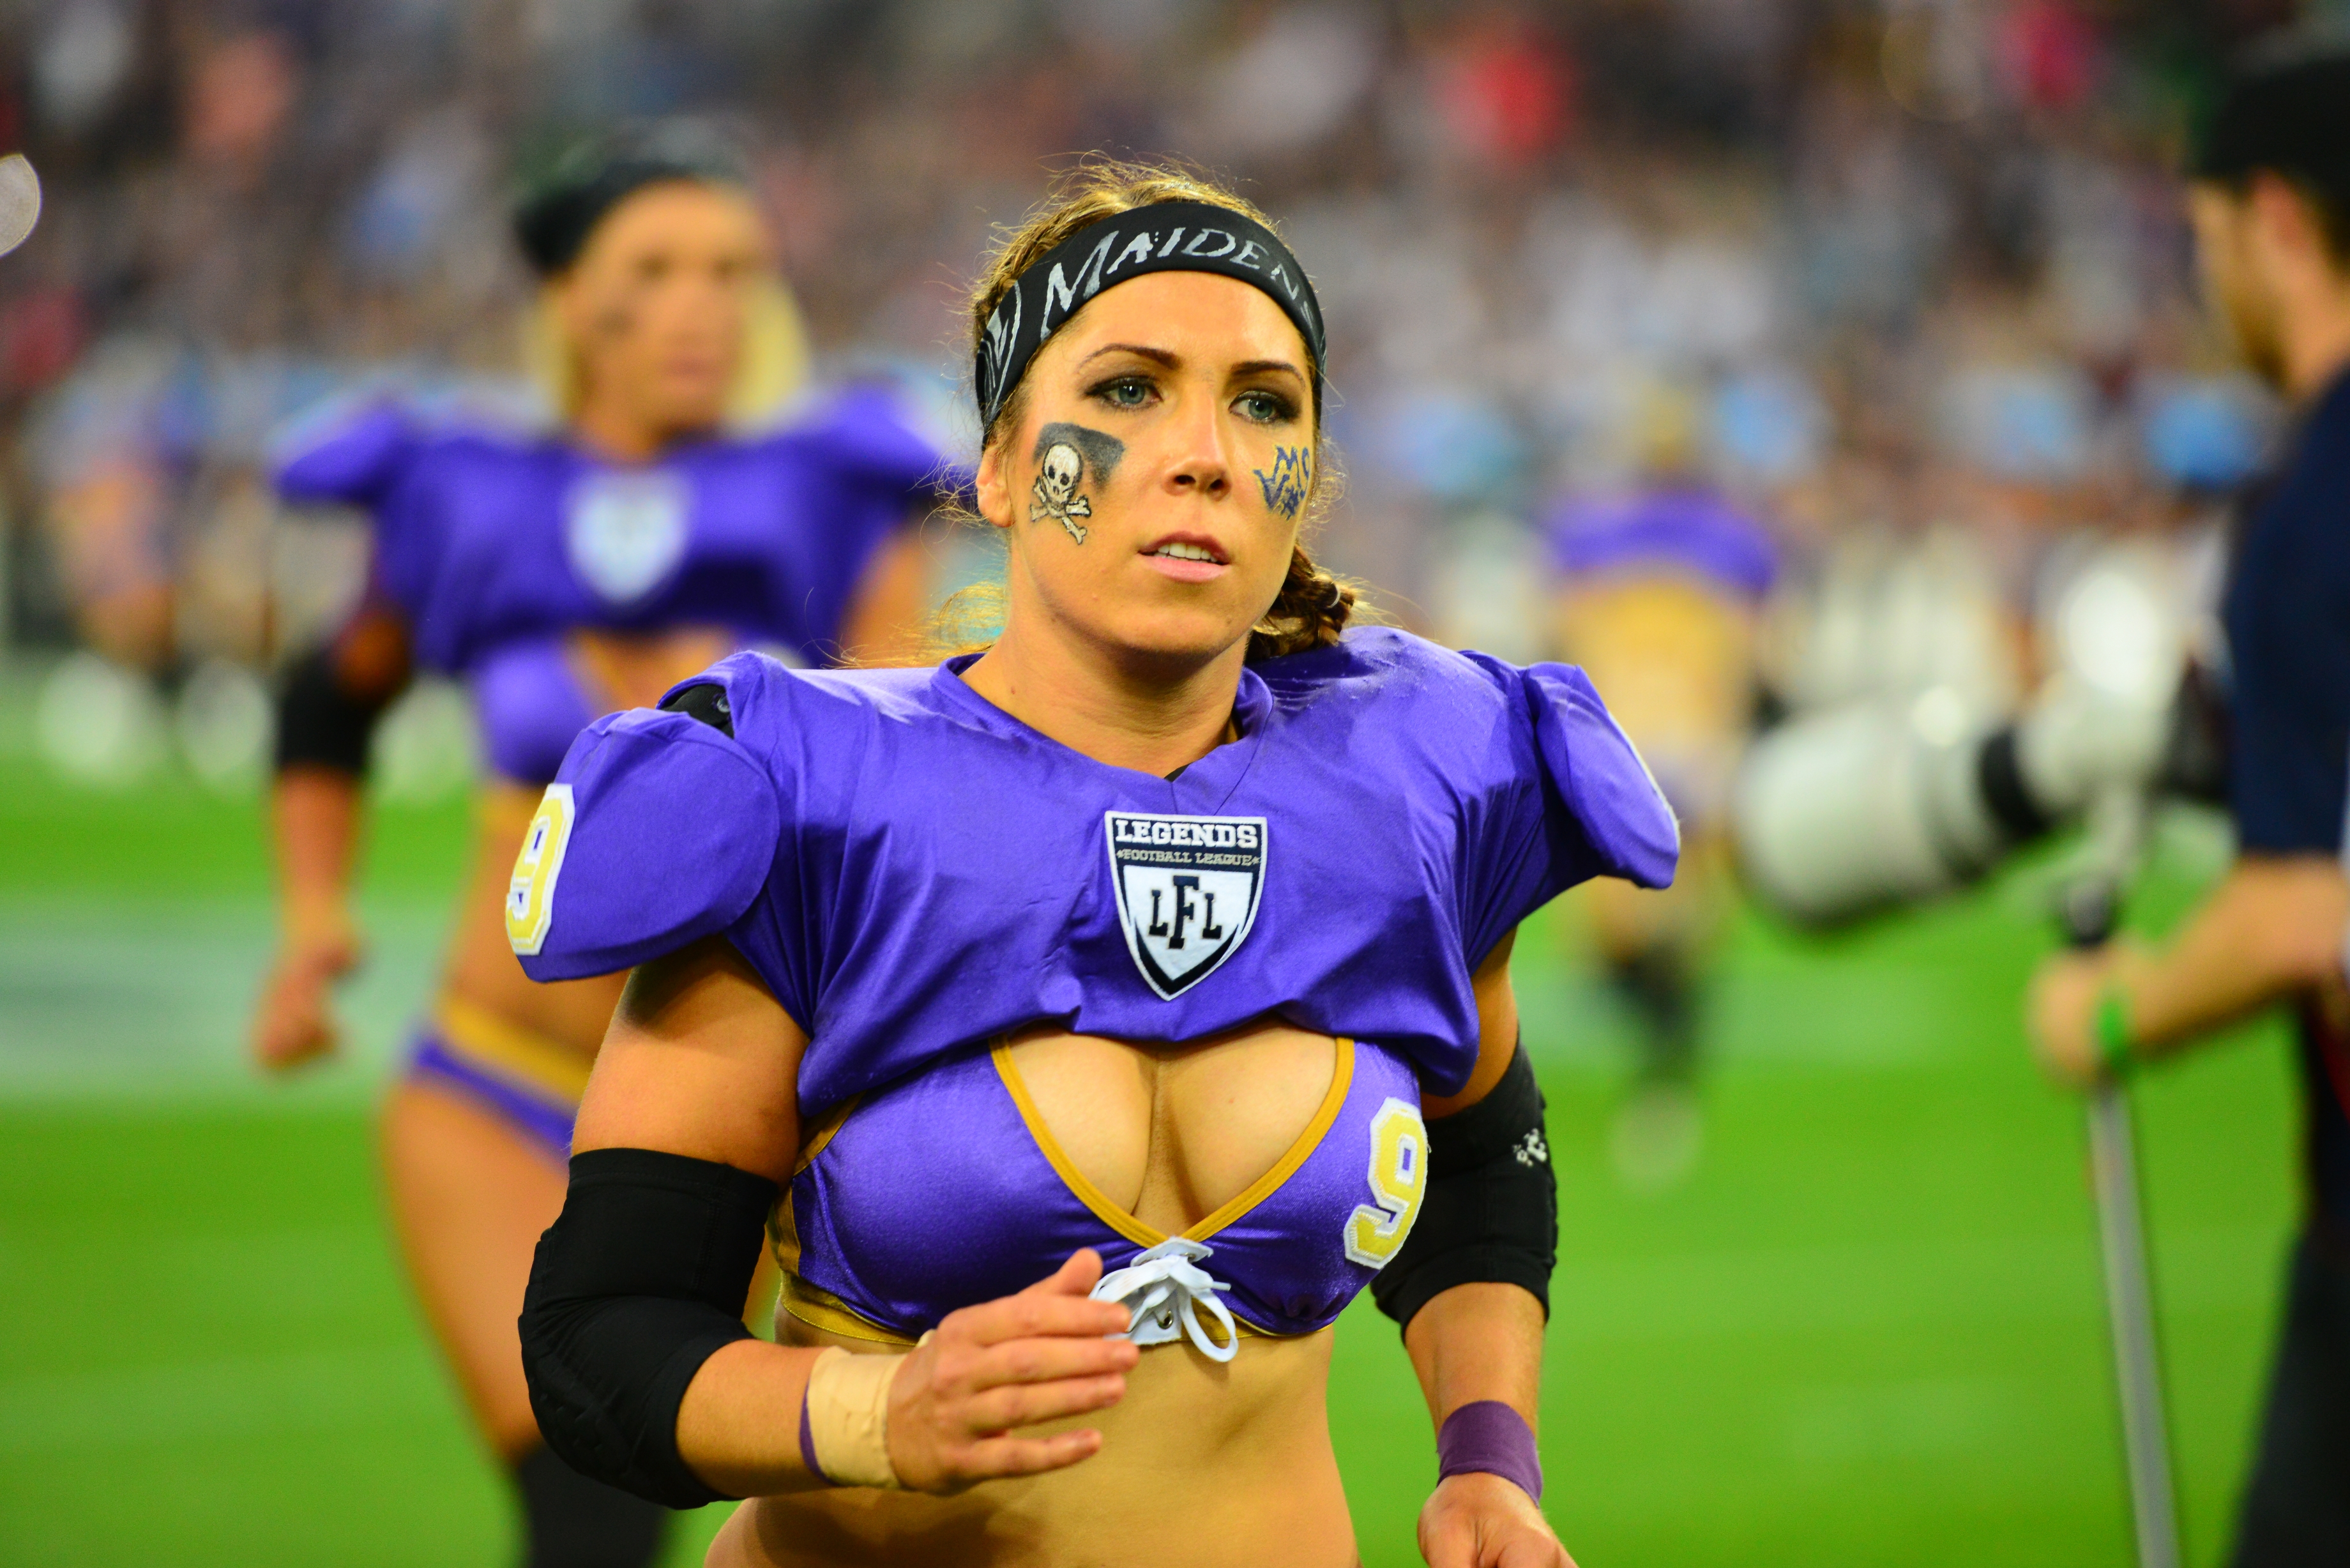 Legends Football League - женская лига американского футбола, созданная в 2...